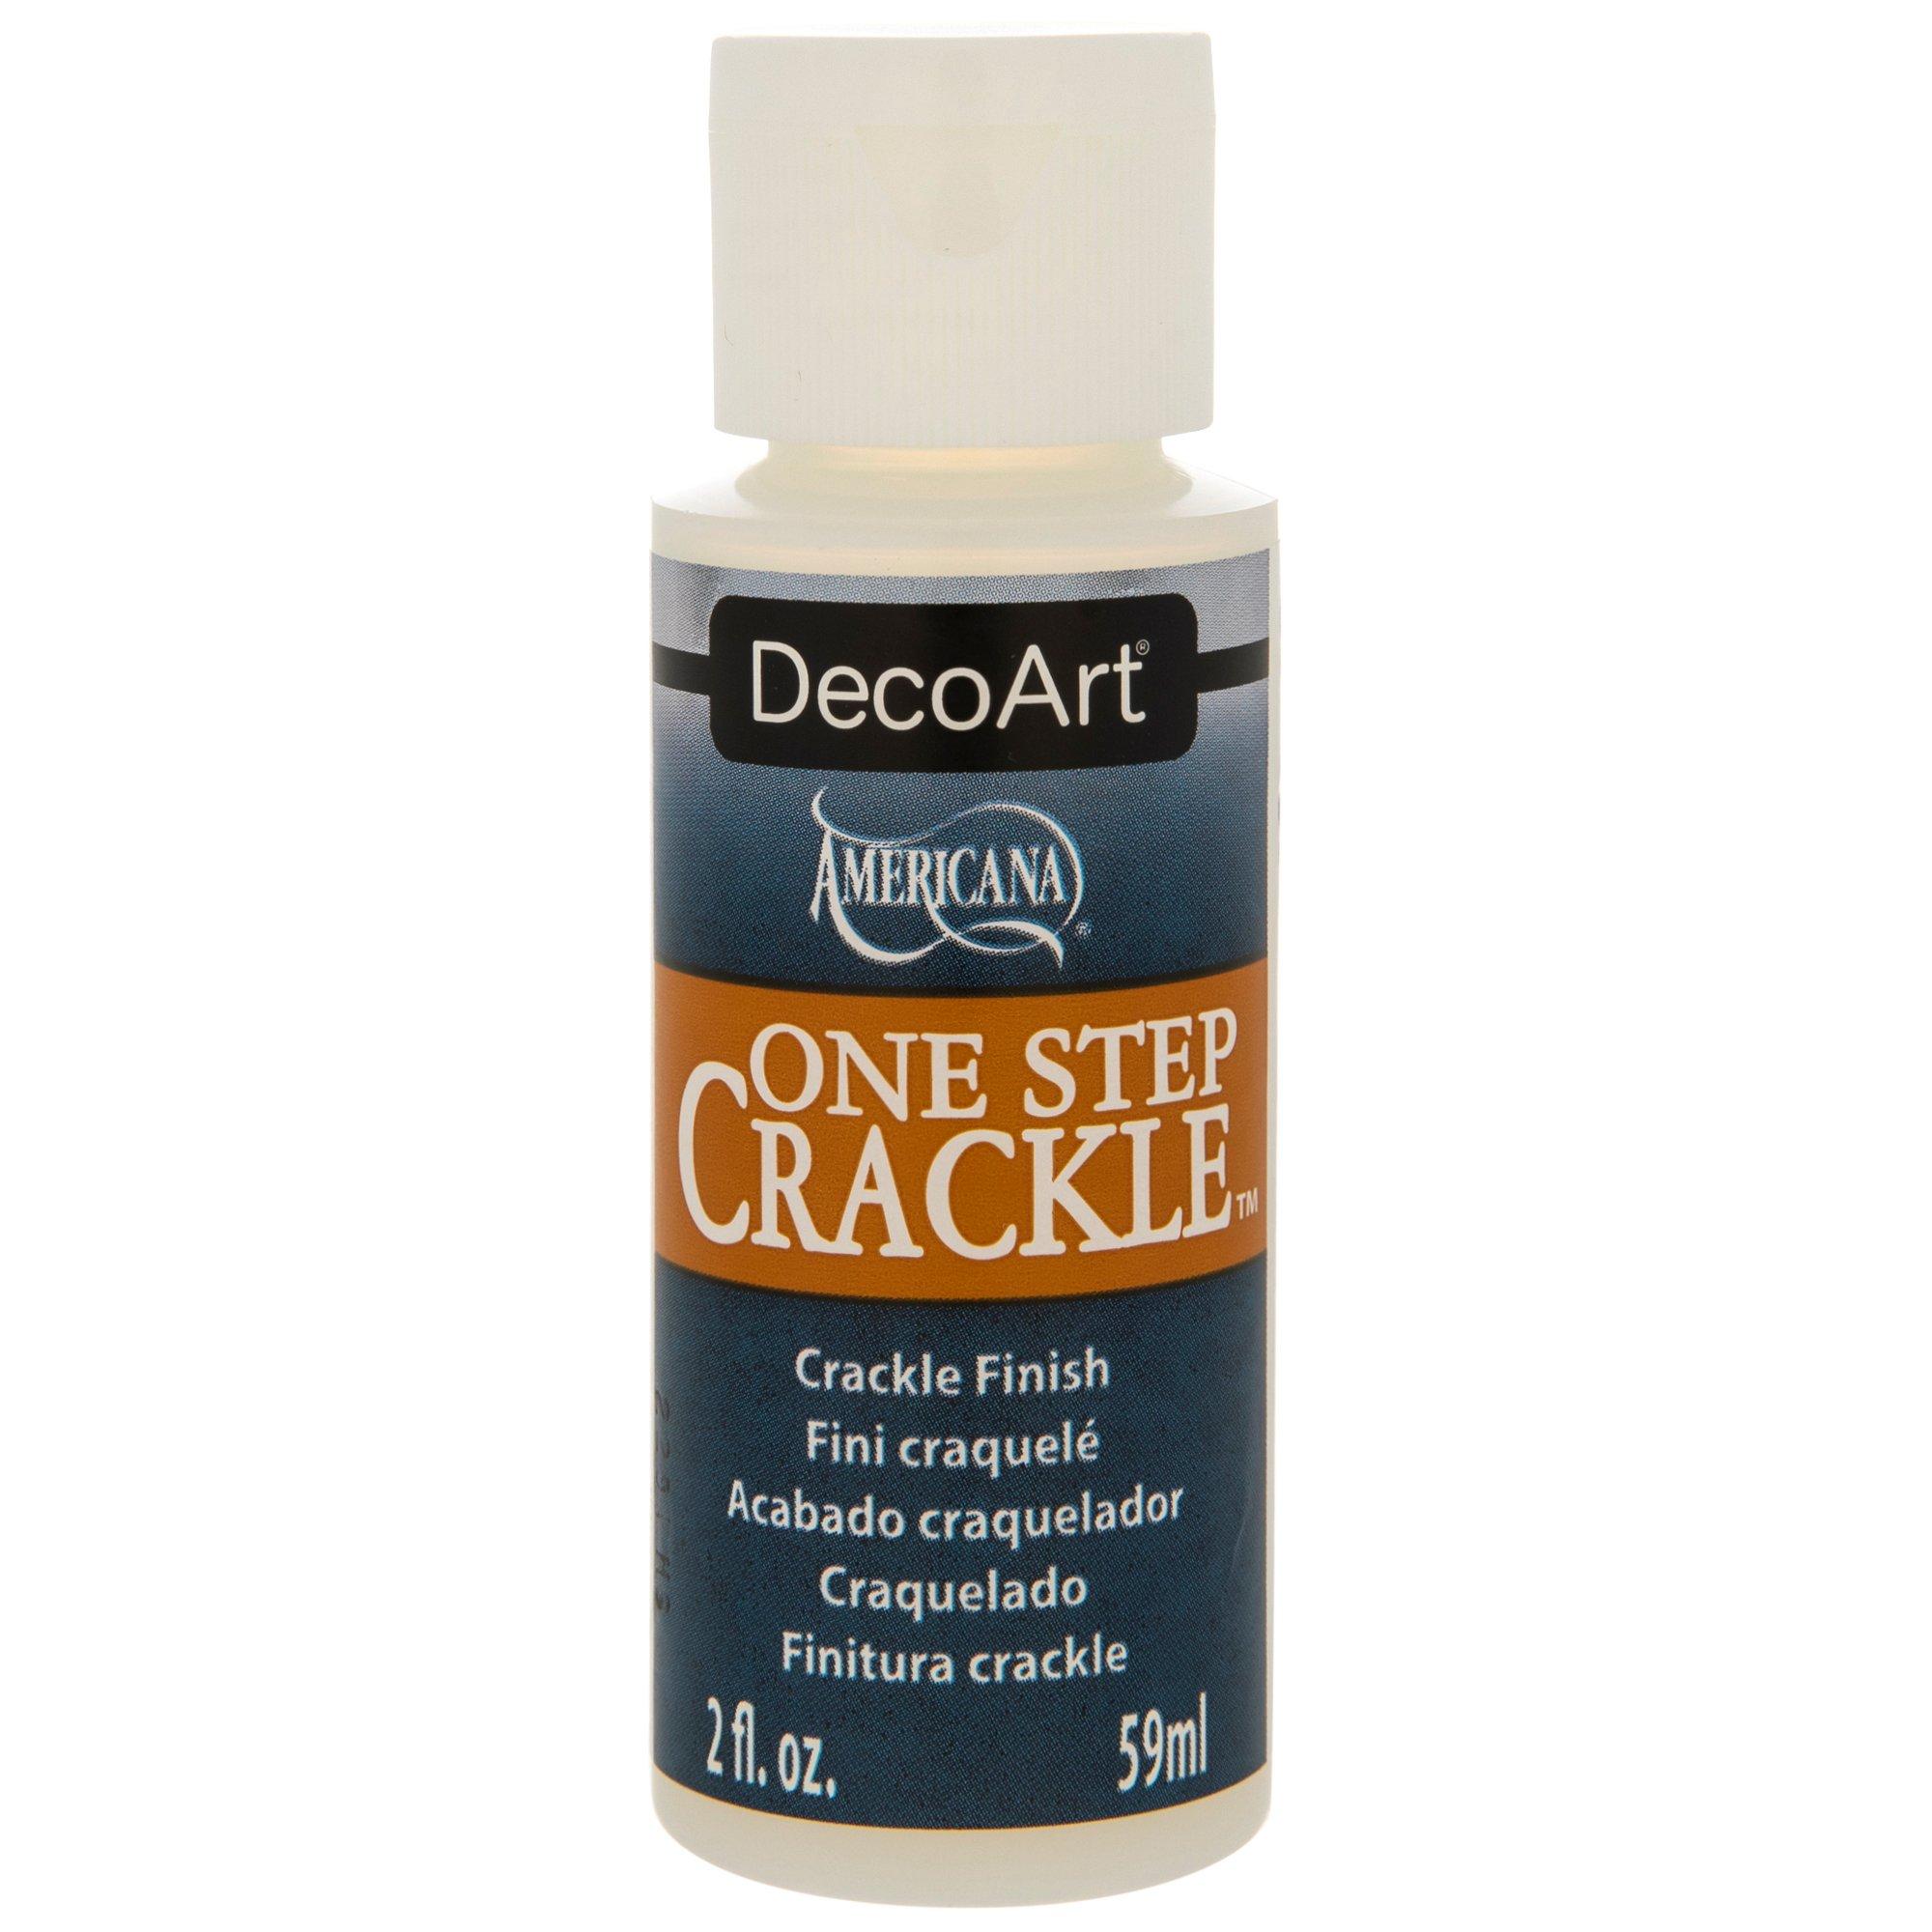 Dixie Belle Crackle ∙ Crackle Paint ∙ Crackle Medium ∙ Crackle Paint F – Mi  Creative Home